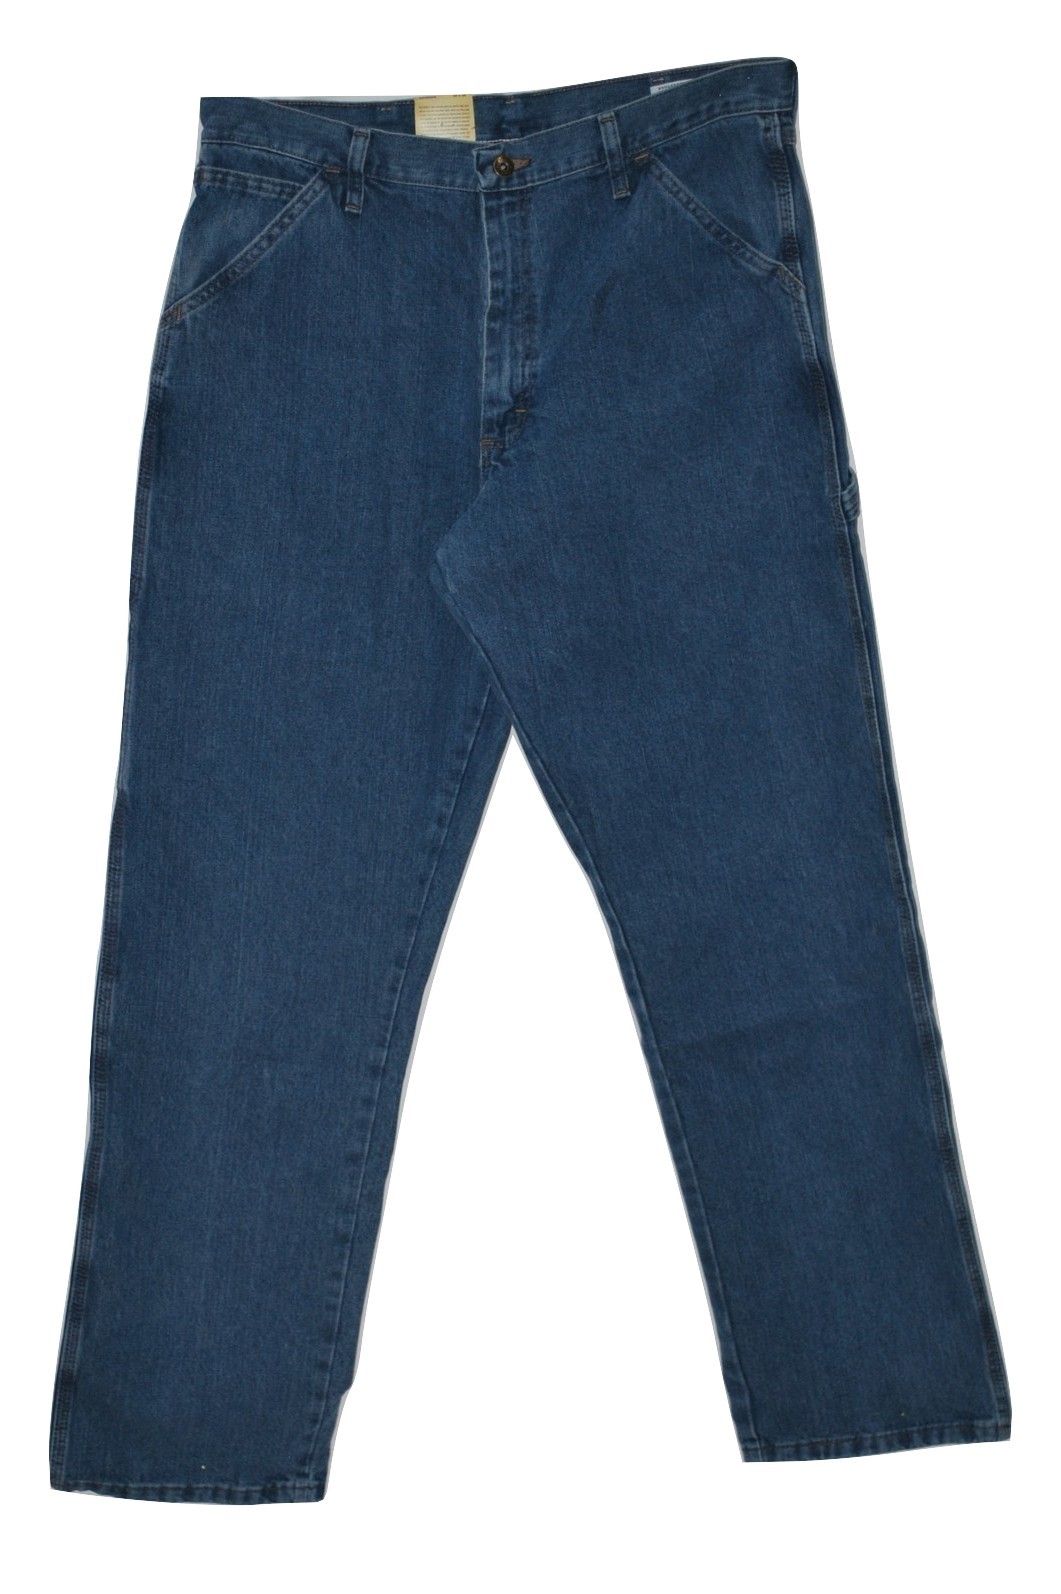 Wrangler Men's Relaxed Fit Carpenter Jeans - Antique Stone 34x34 - Men ...